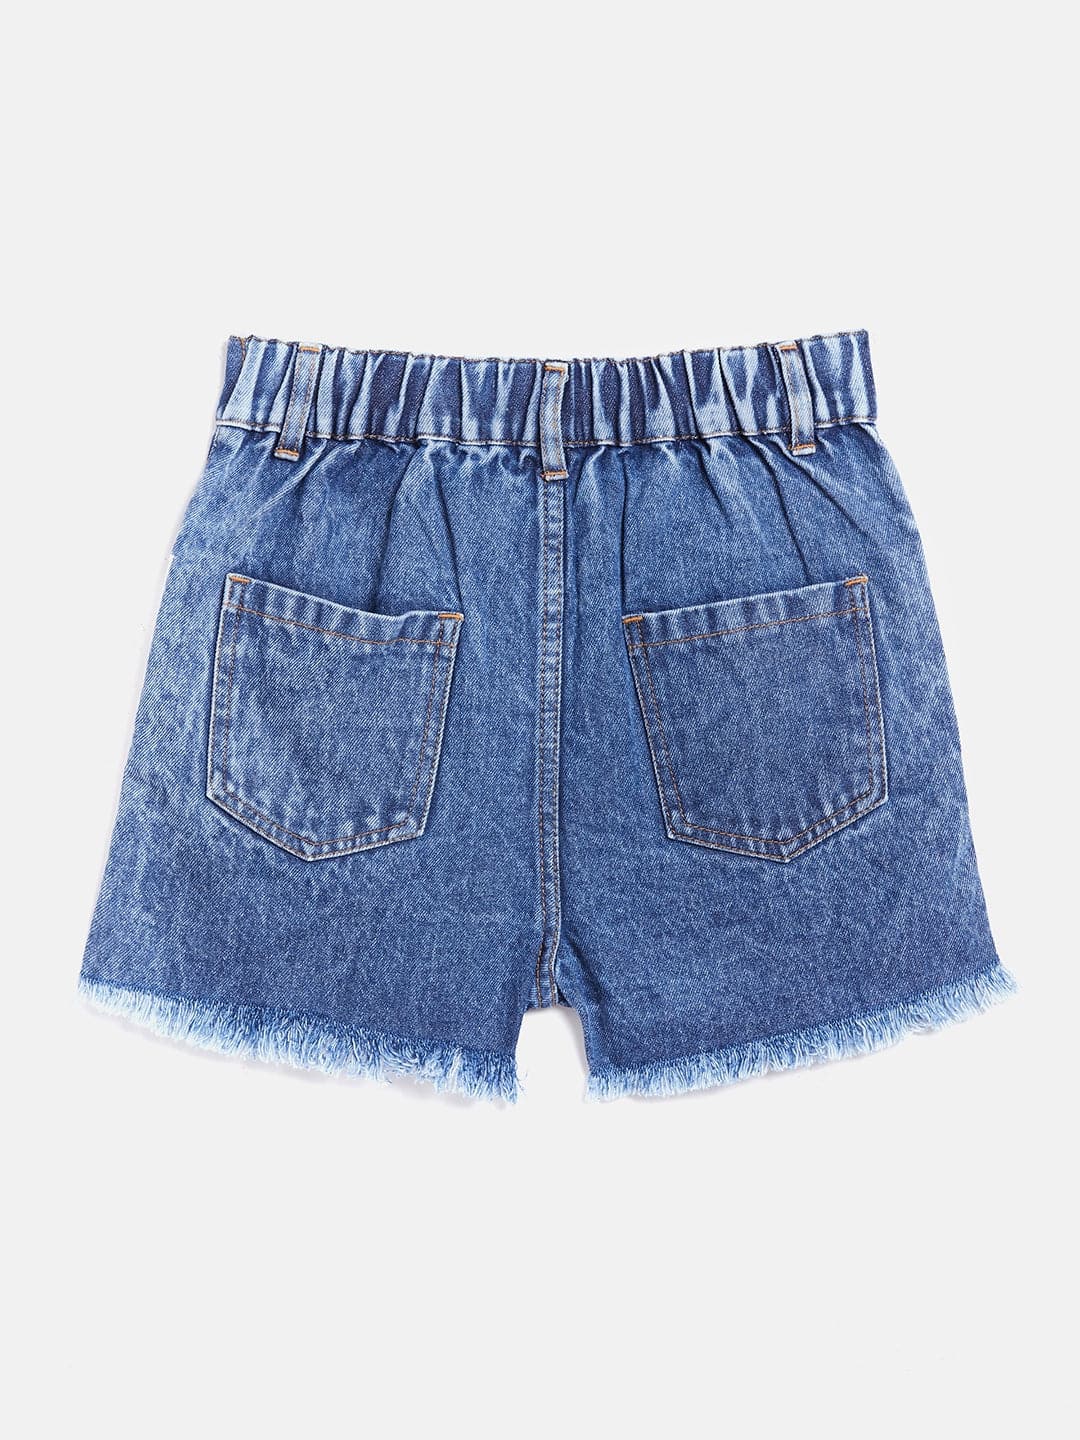 Girls Blue Side Tape Raw Hem Denim Shorts - Lyush Kids